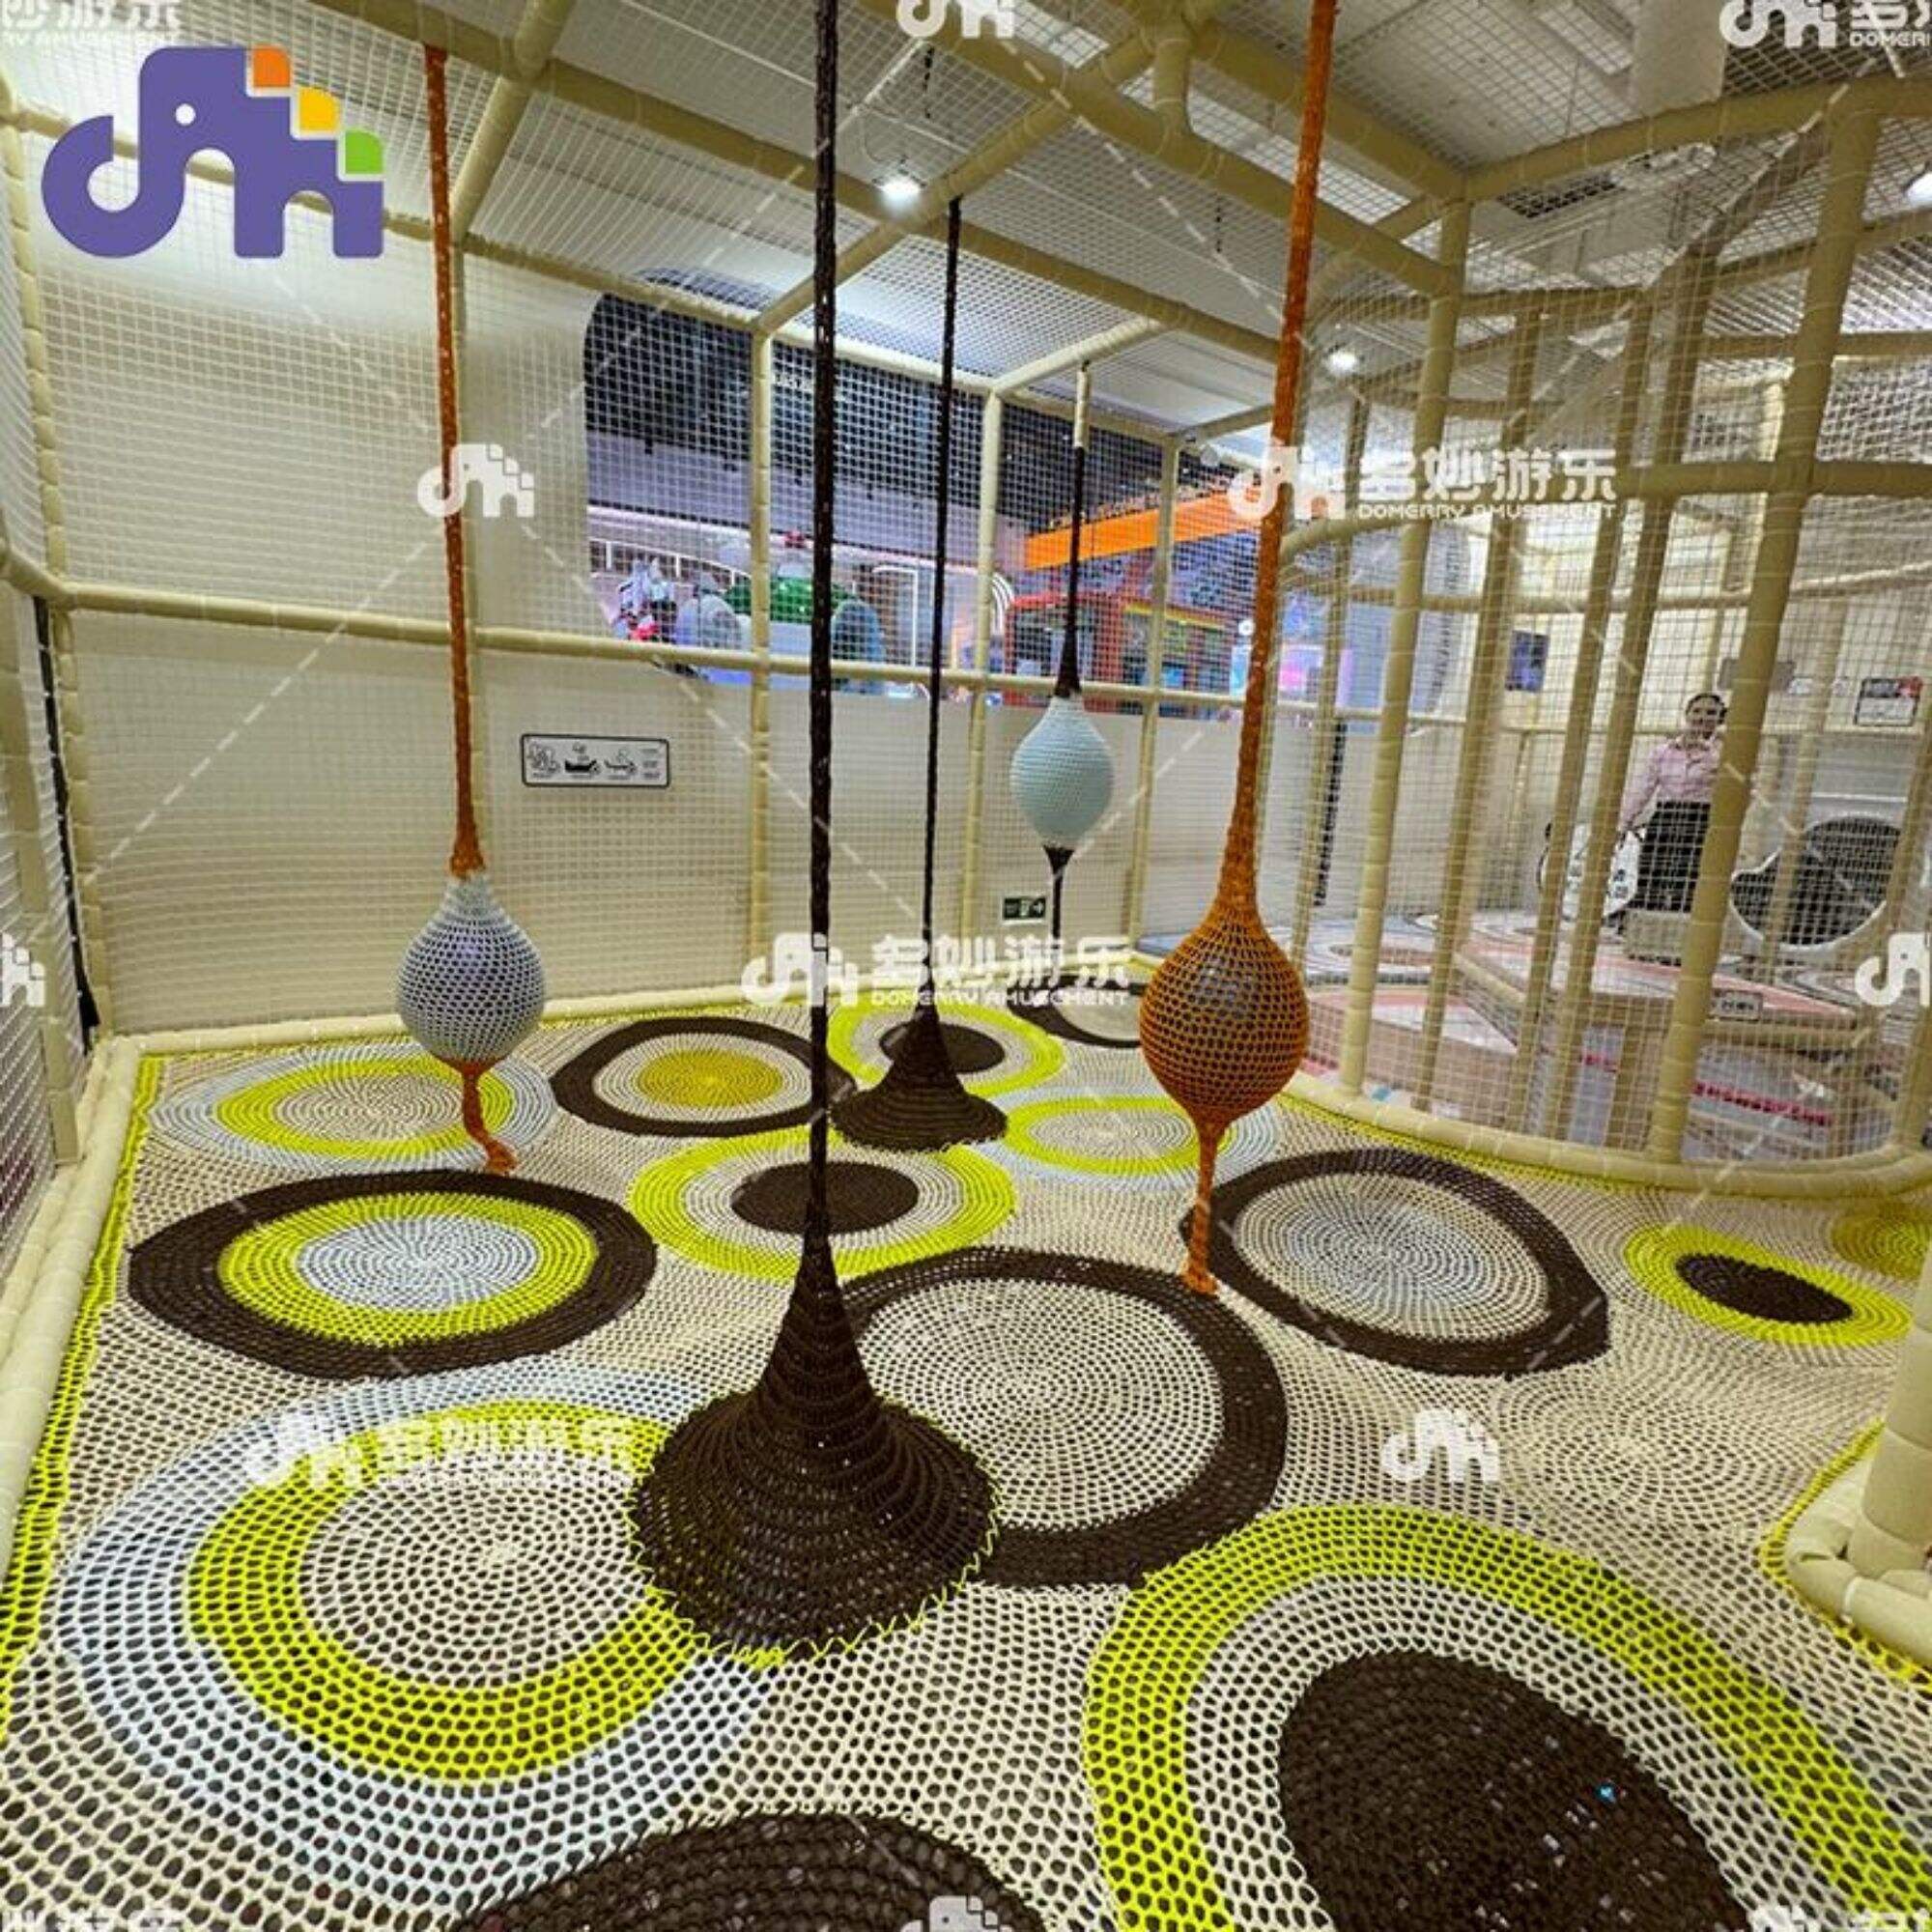 Ներքին նեյլոնե մագլցման ցանց երեխաների համար առևտրի կենտրոնի և դպրոցի խաղահրապարակի փոքր խաղահրապարակի սարքավորումների համար